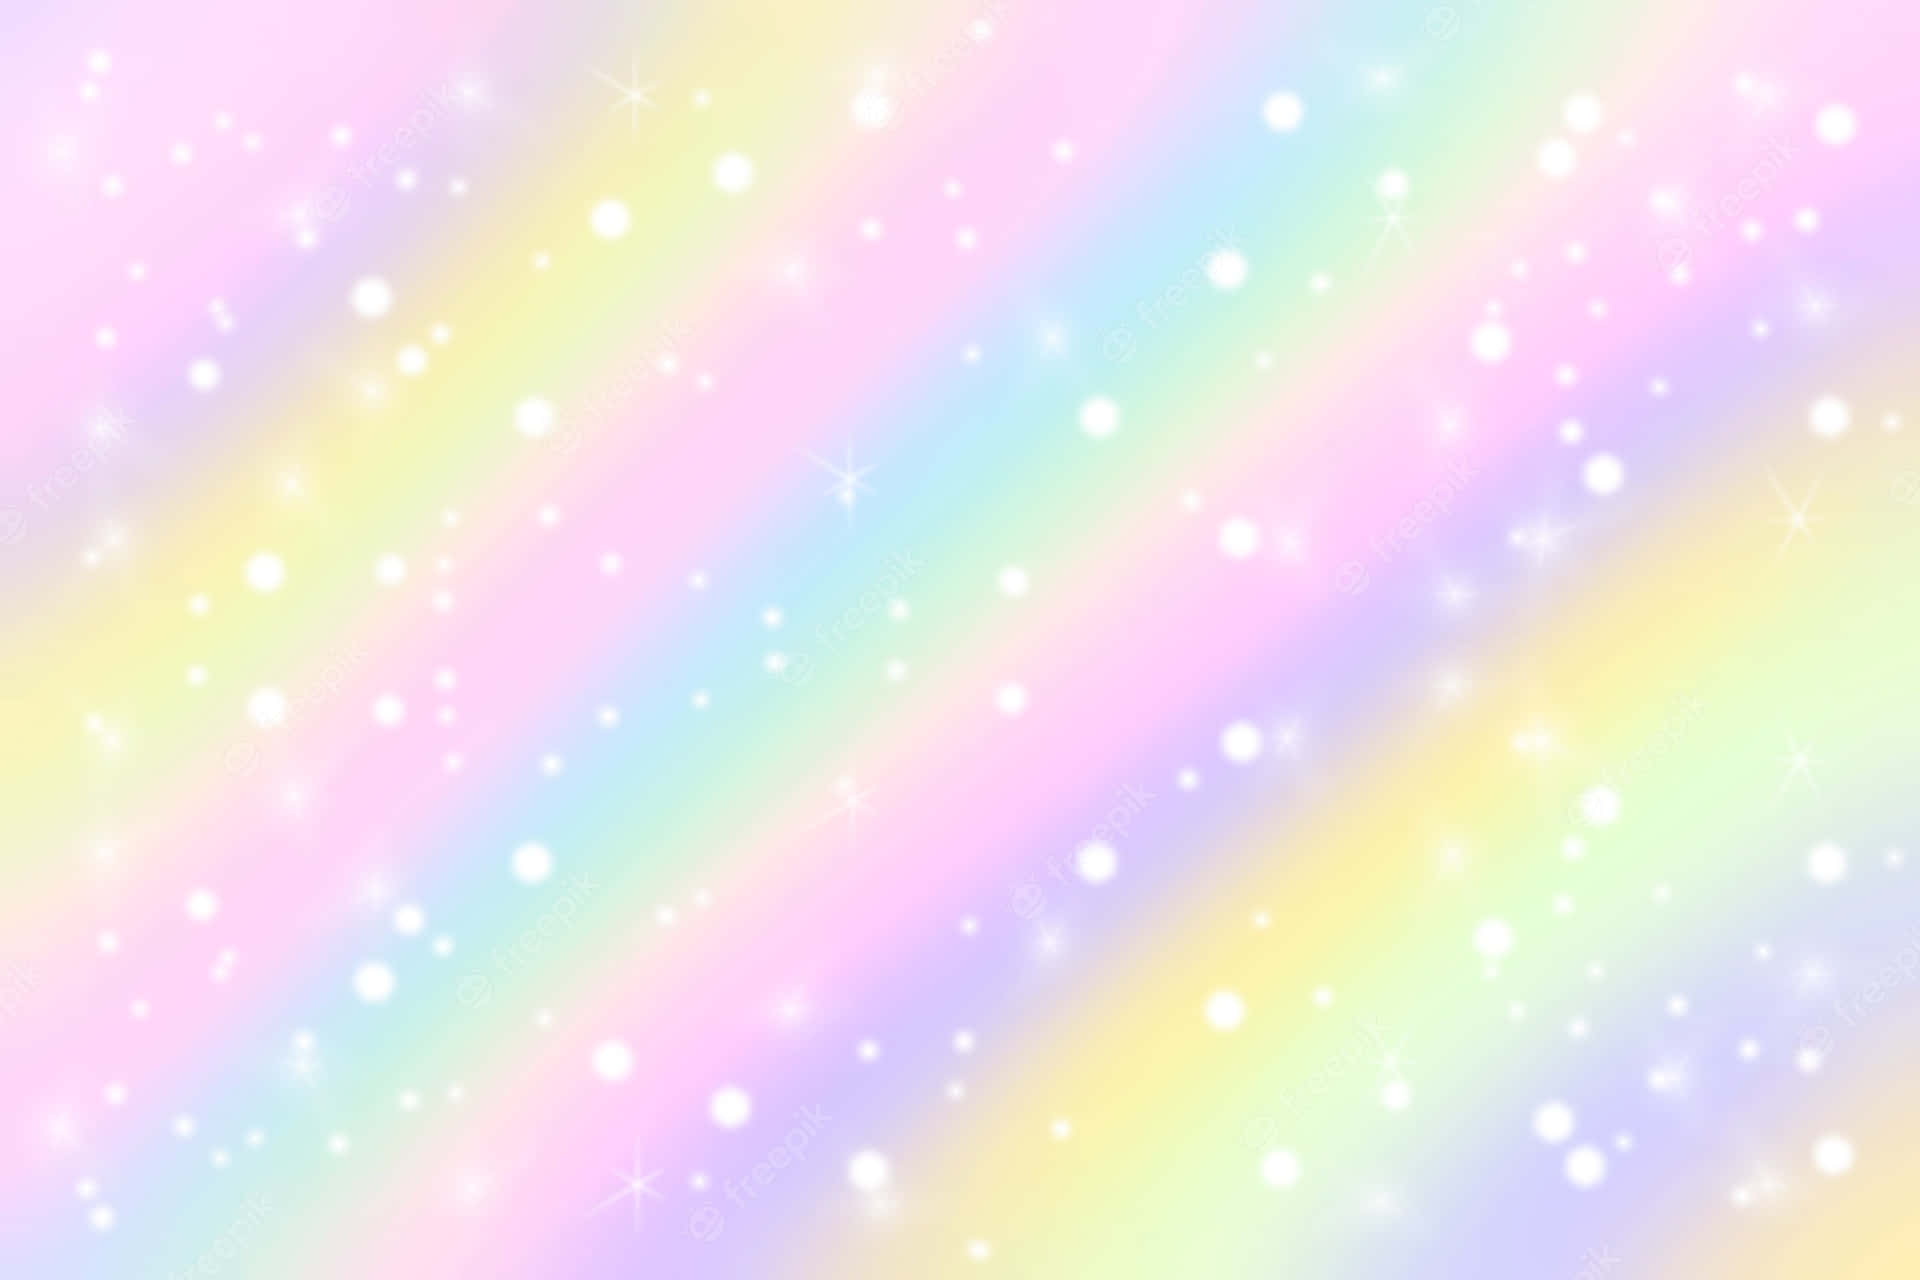 Eintraumhaftes Pastellfarbenes Regenbogen-gradienten-hintergrundbild.